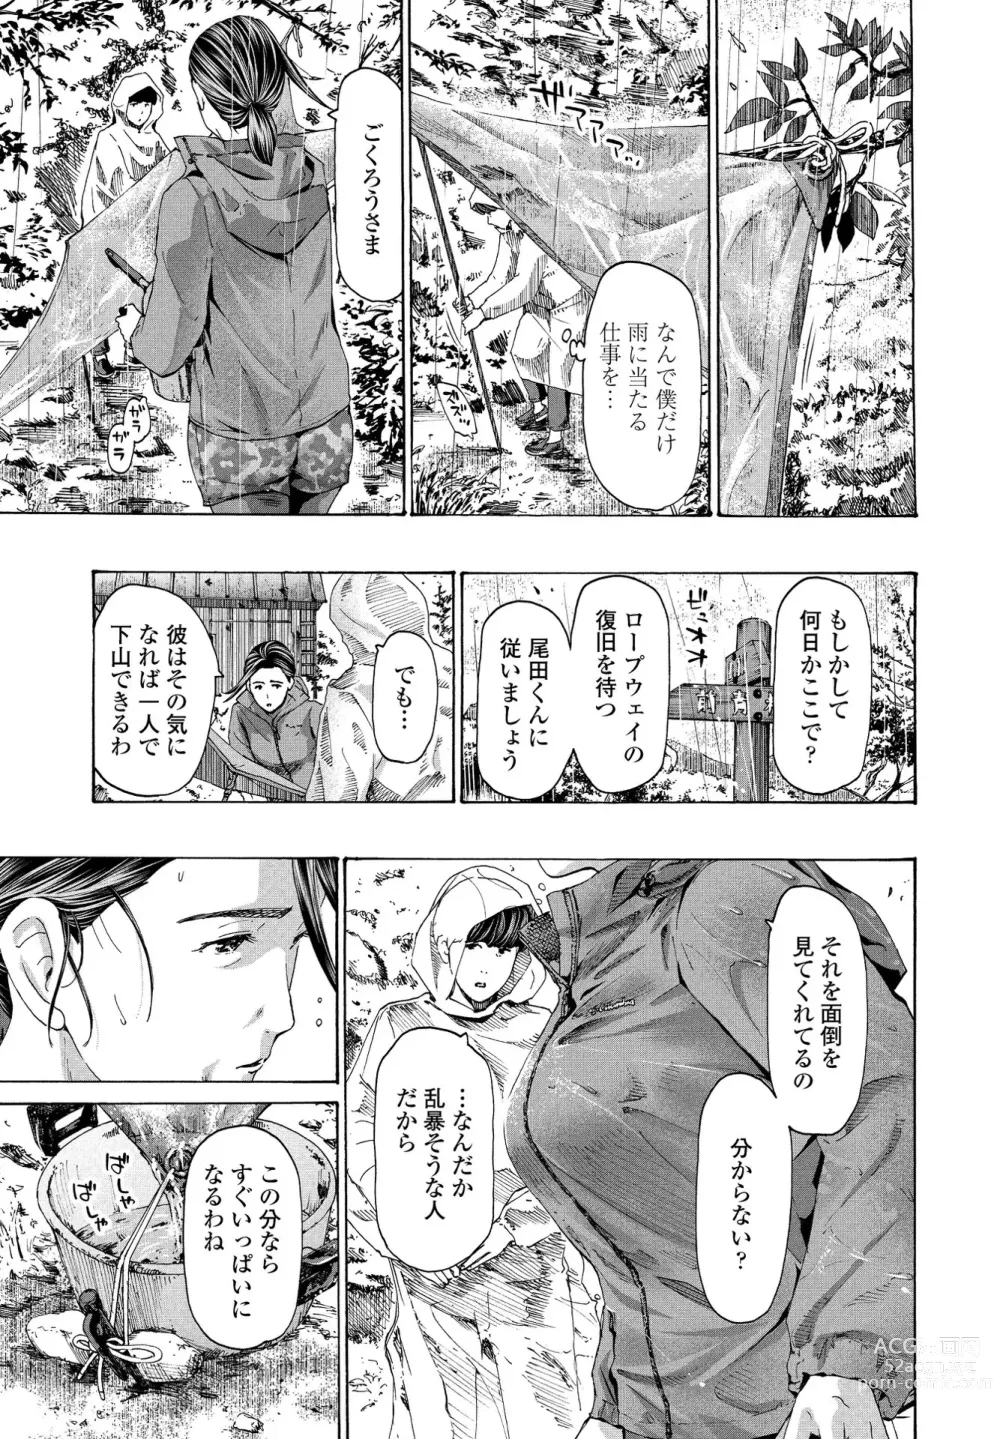 Page 9 of manga Hinangoya nite